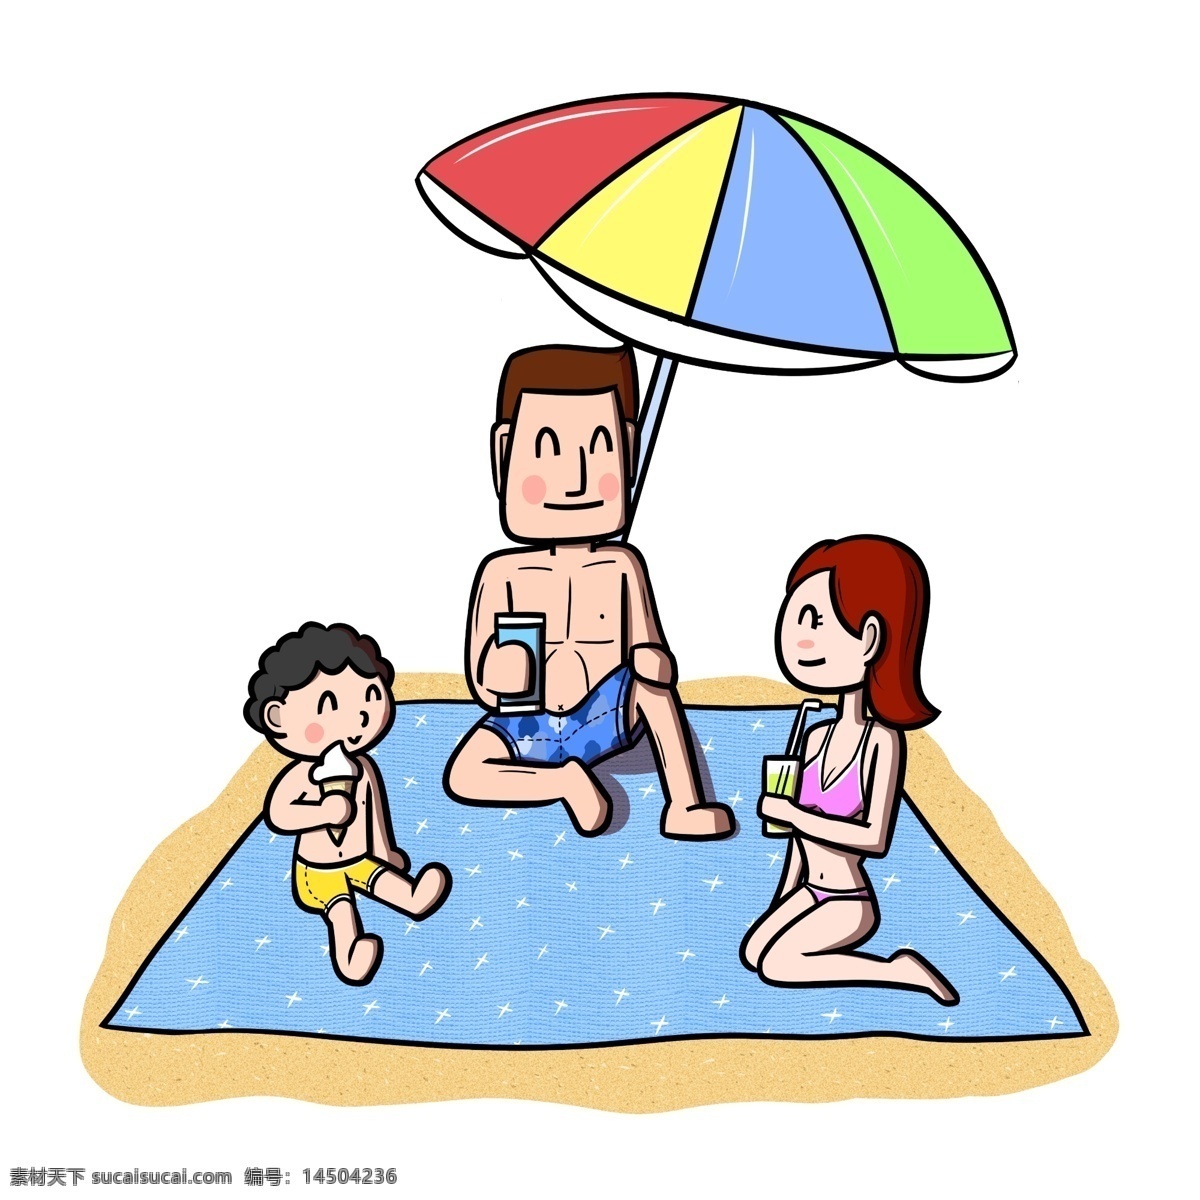 卡通 全家人 沙滩 休闲 透明 底 夏季 夏天 卡通家人 儿童 玩耍 海边 海滩 海边人物 夏季人物 夏天人物 卡通人物 卡通夏季